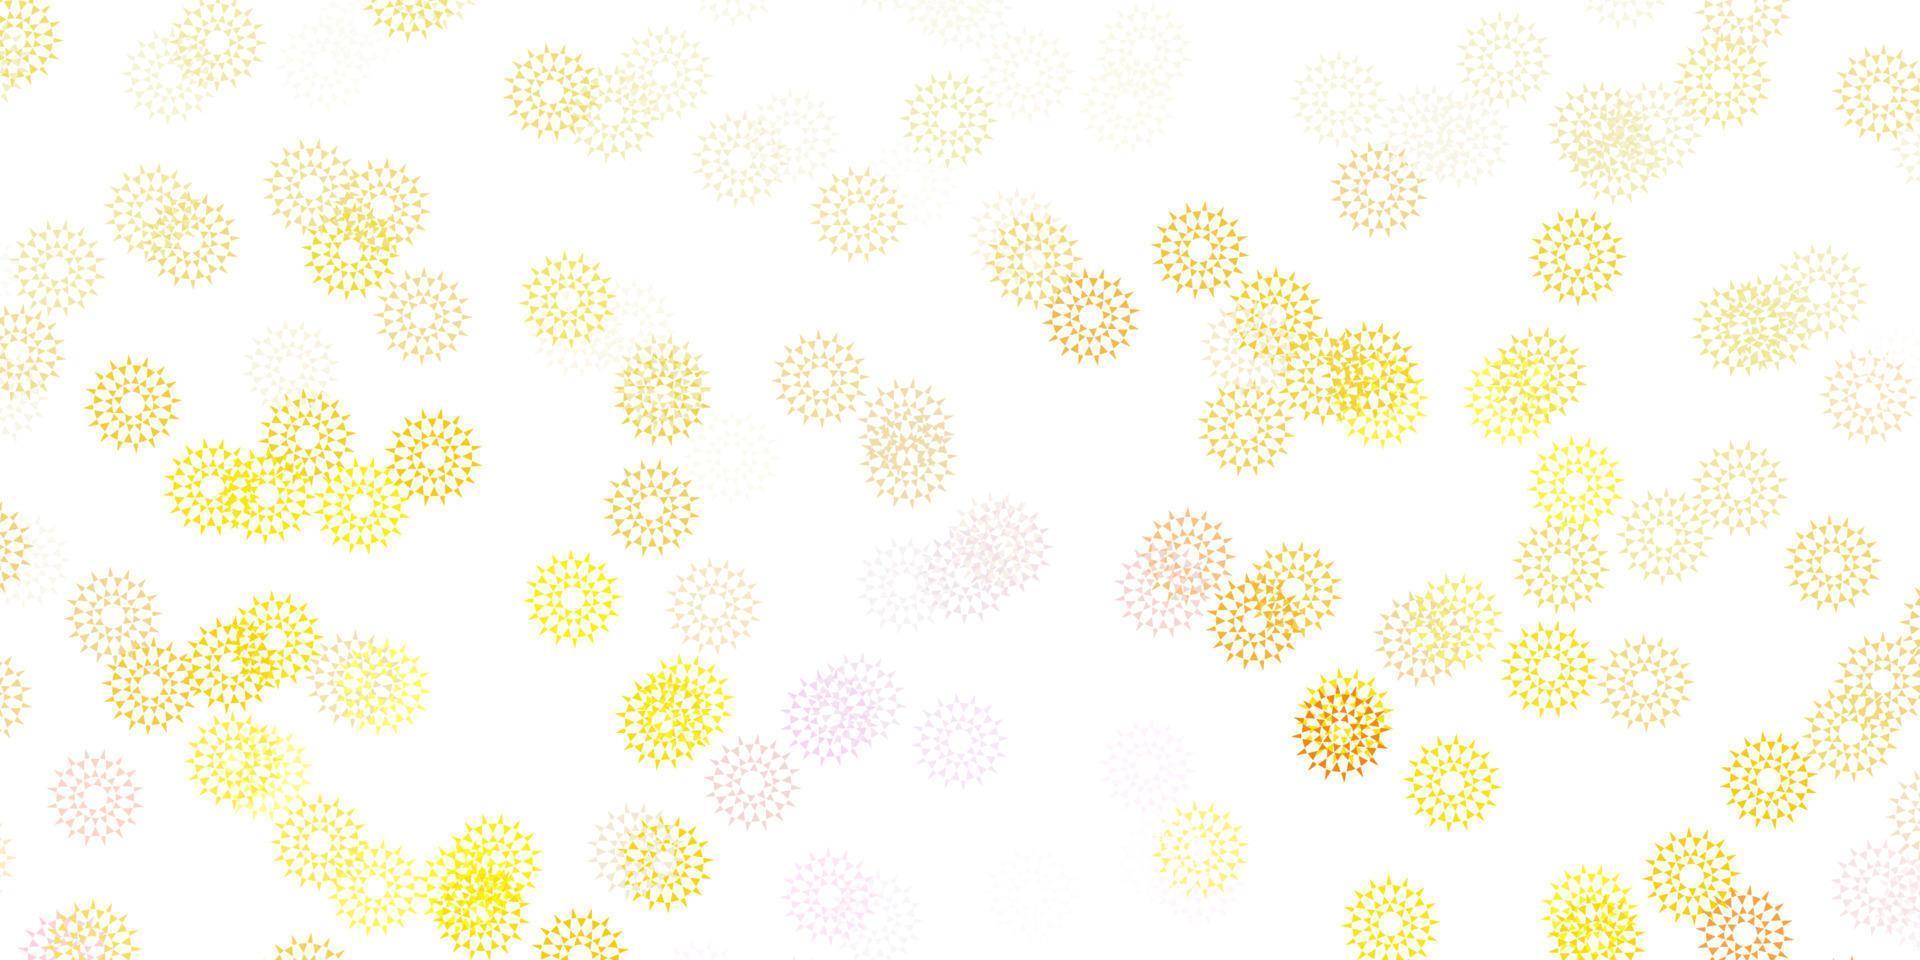 fond de doodle vecteur rose clair, jaune avec des fleurs.